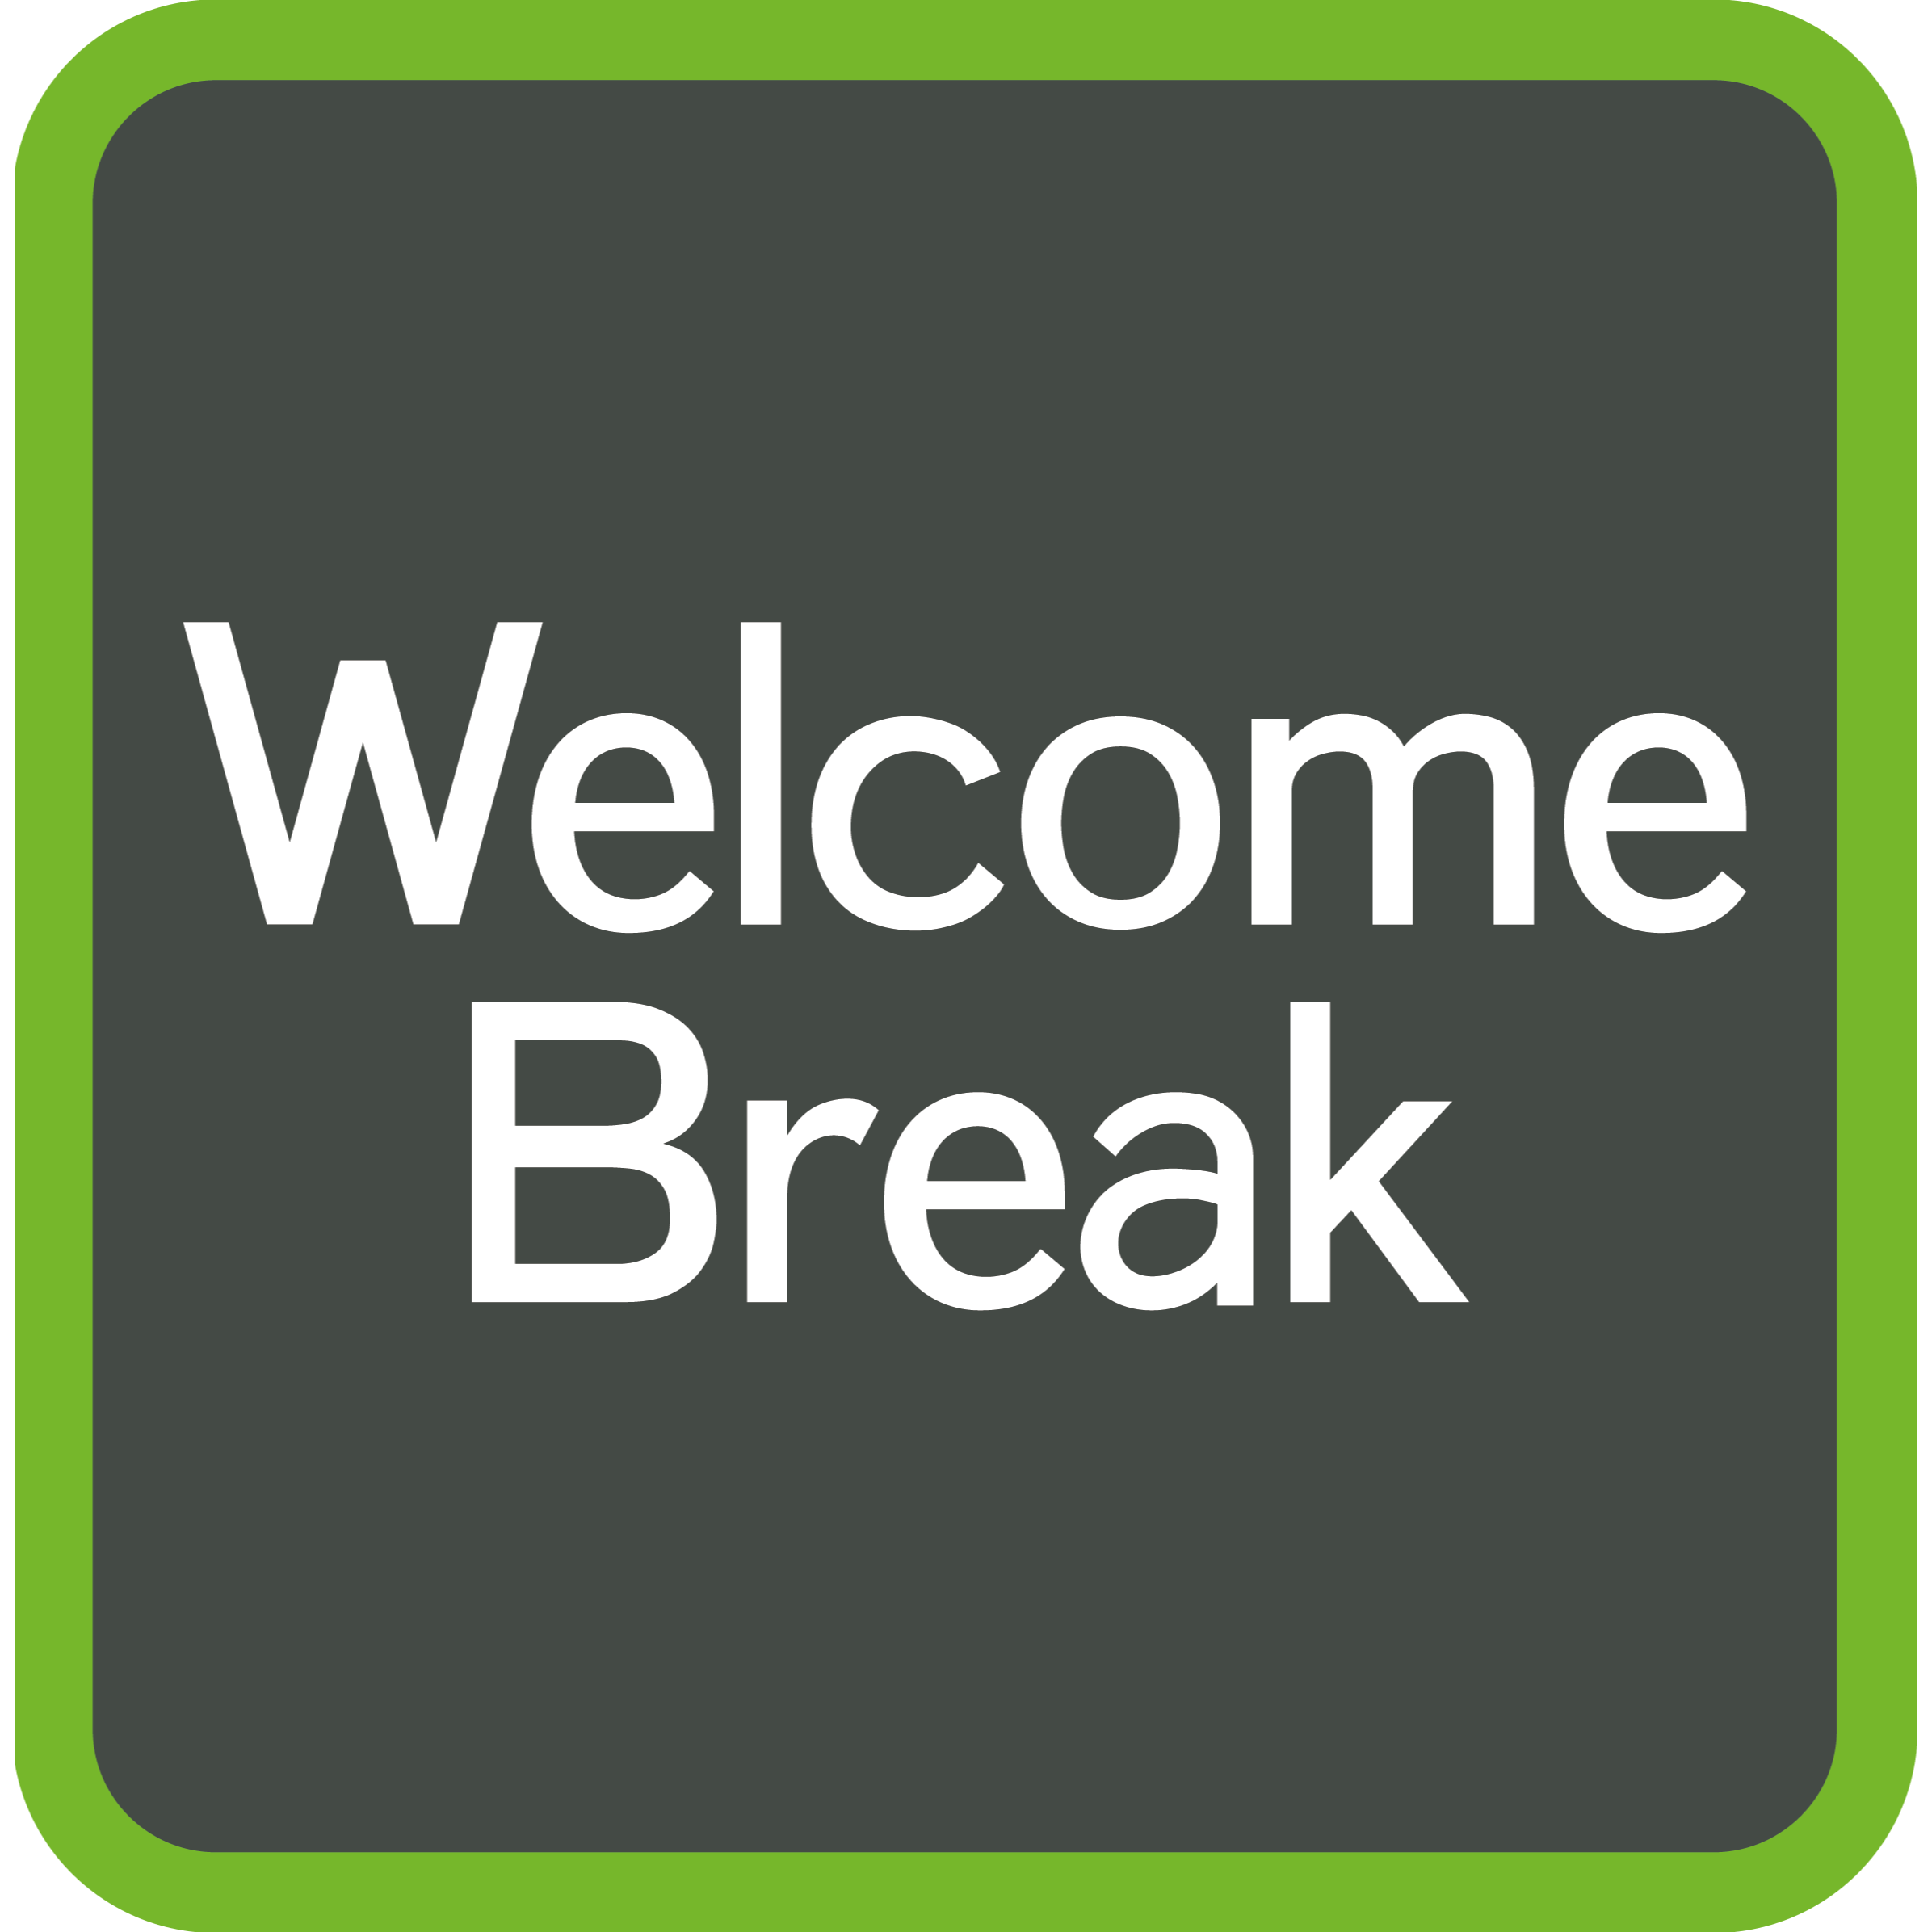 Welcome Break Sarn Park Services M4 Logo